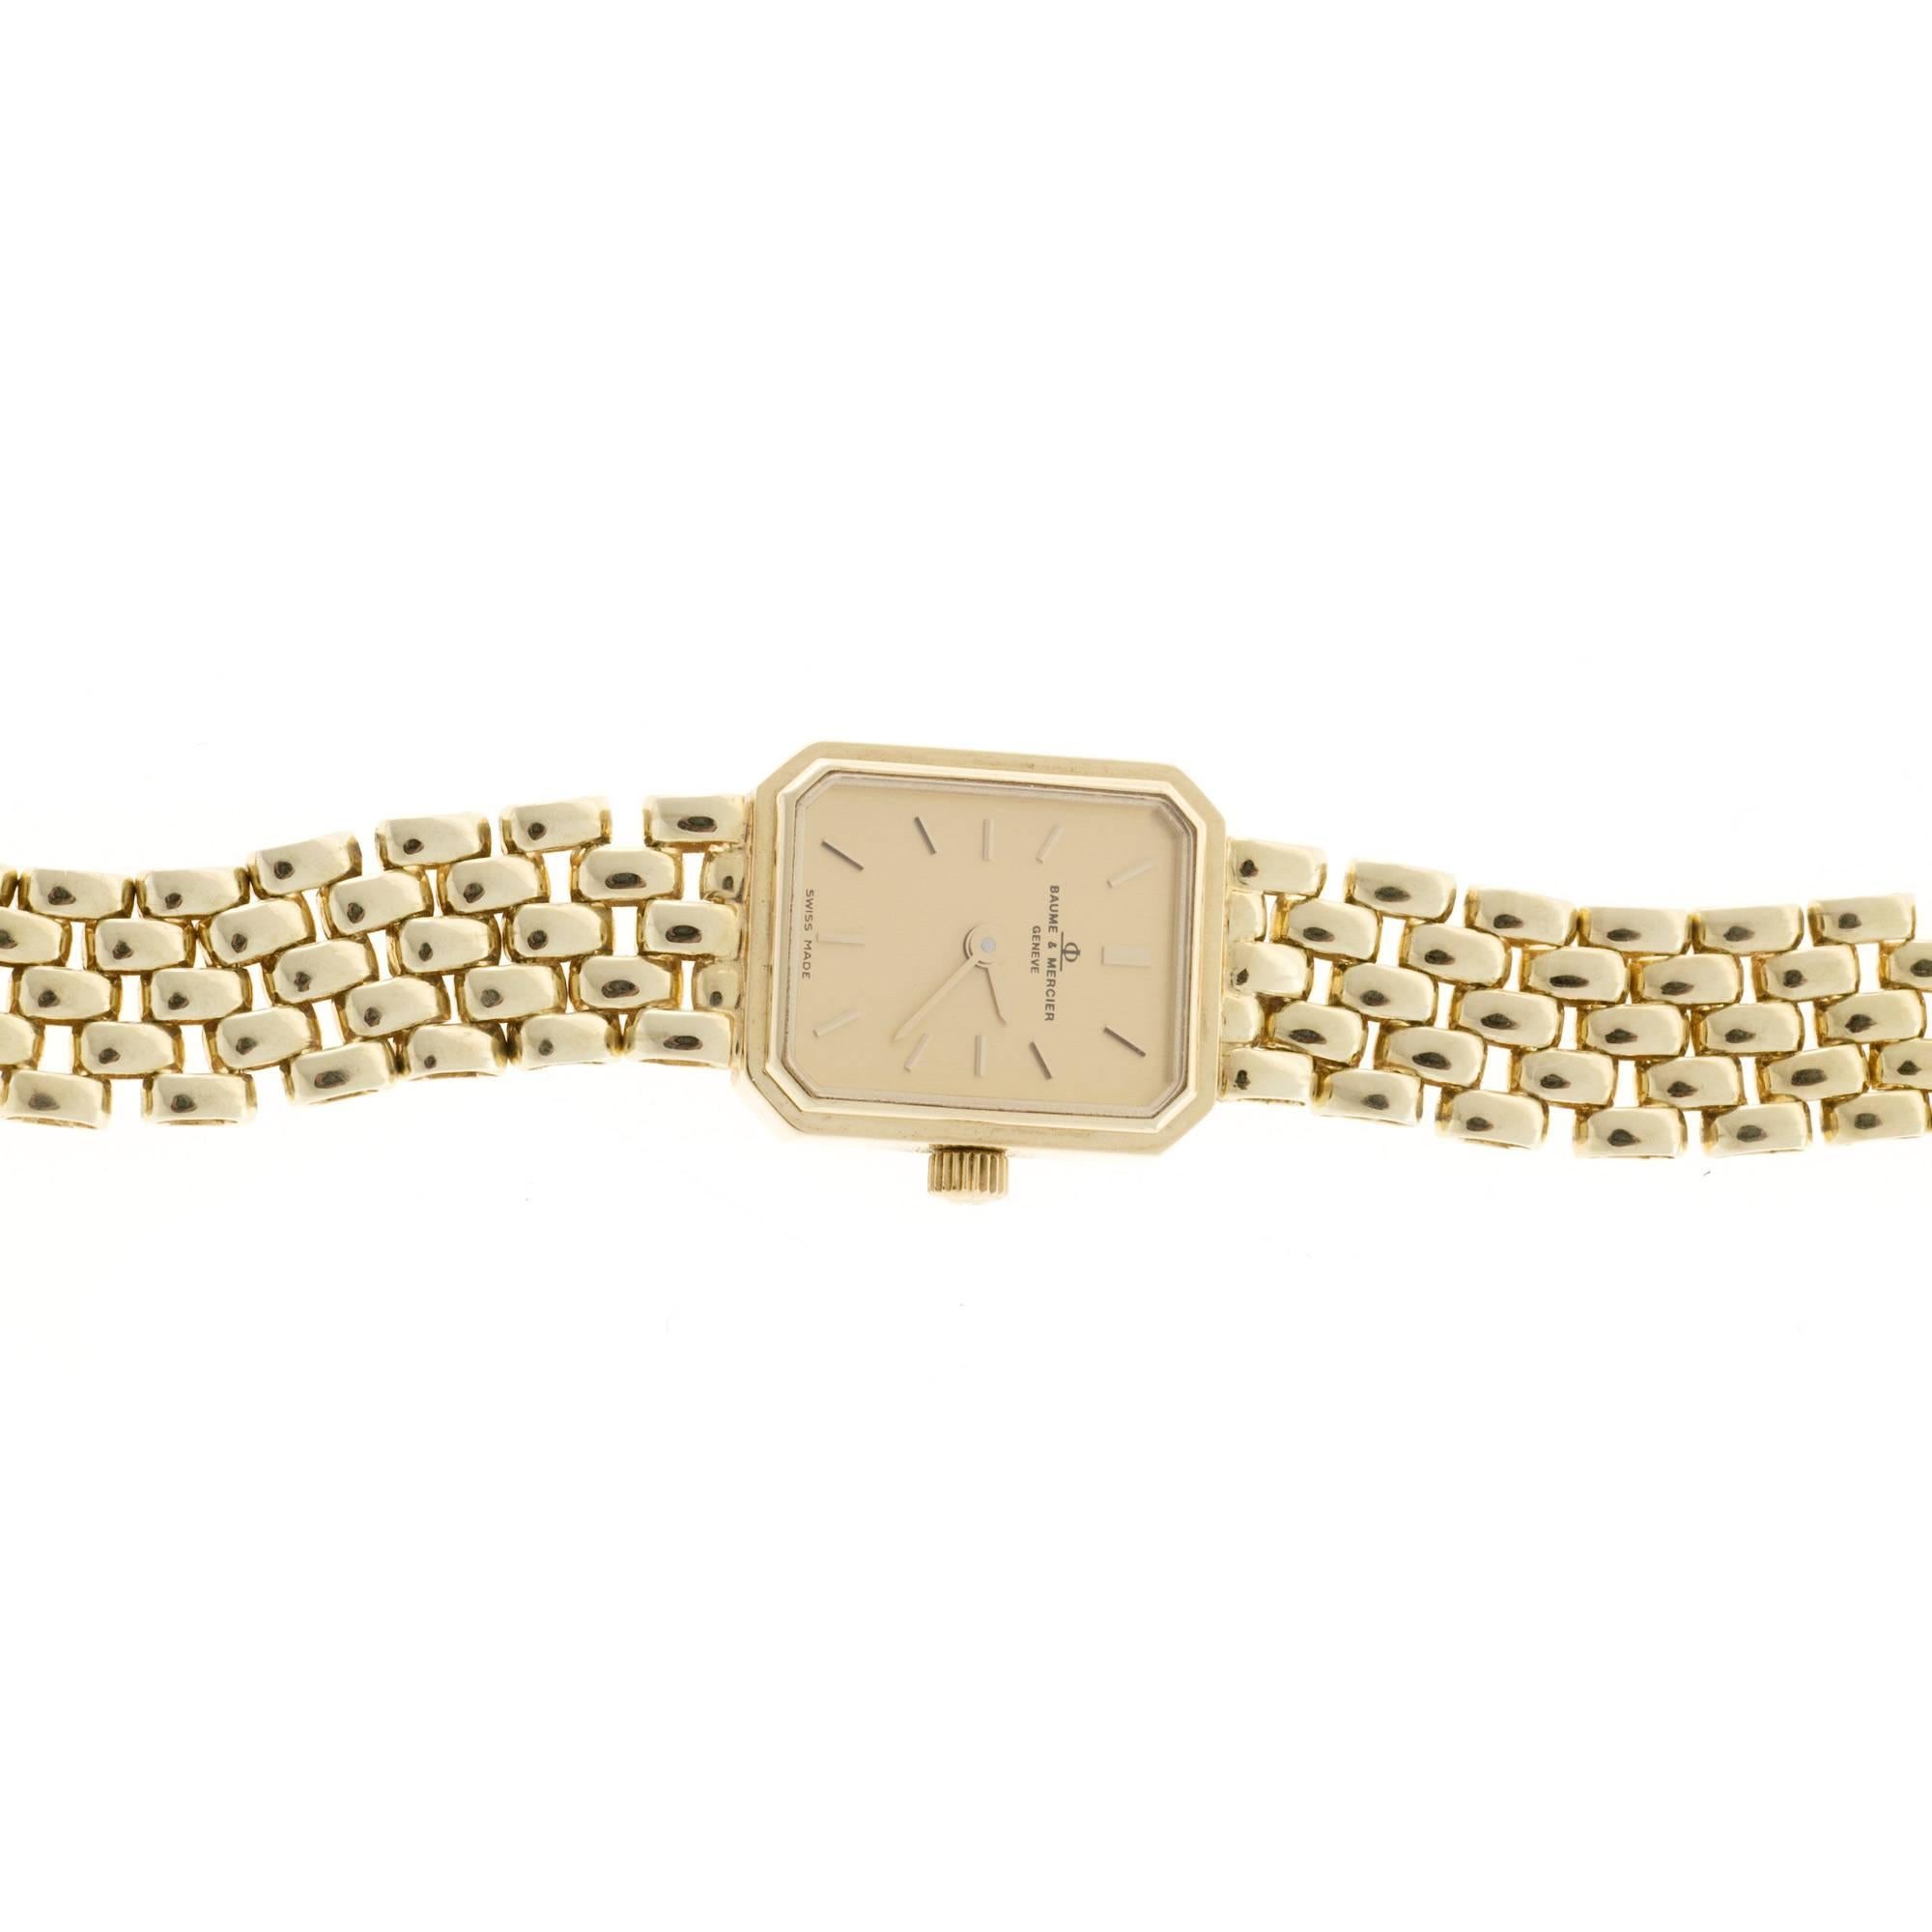 baume mercier women's 14k gold watch